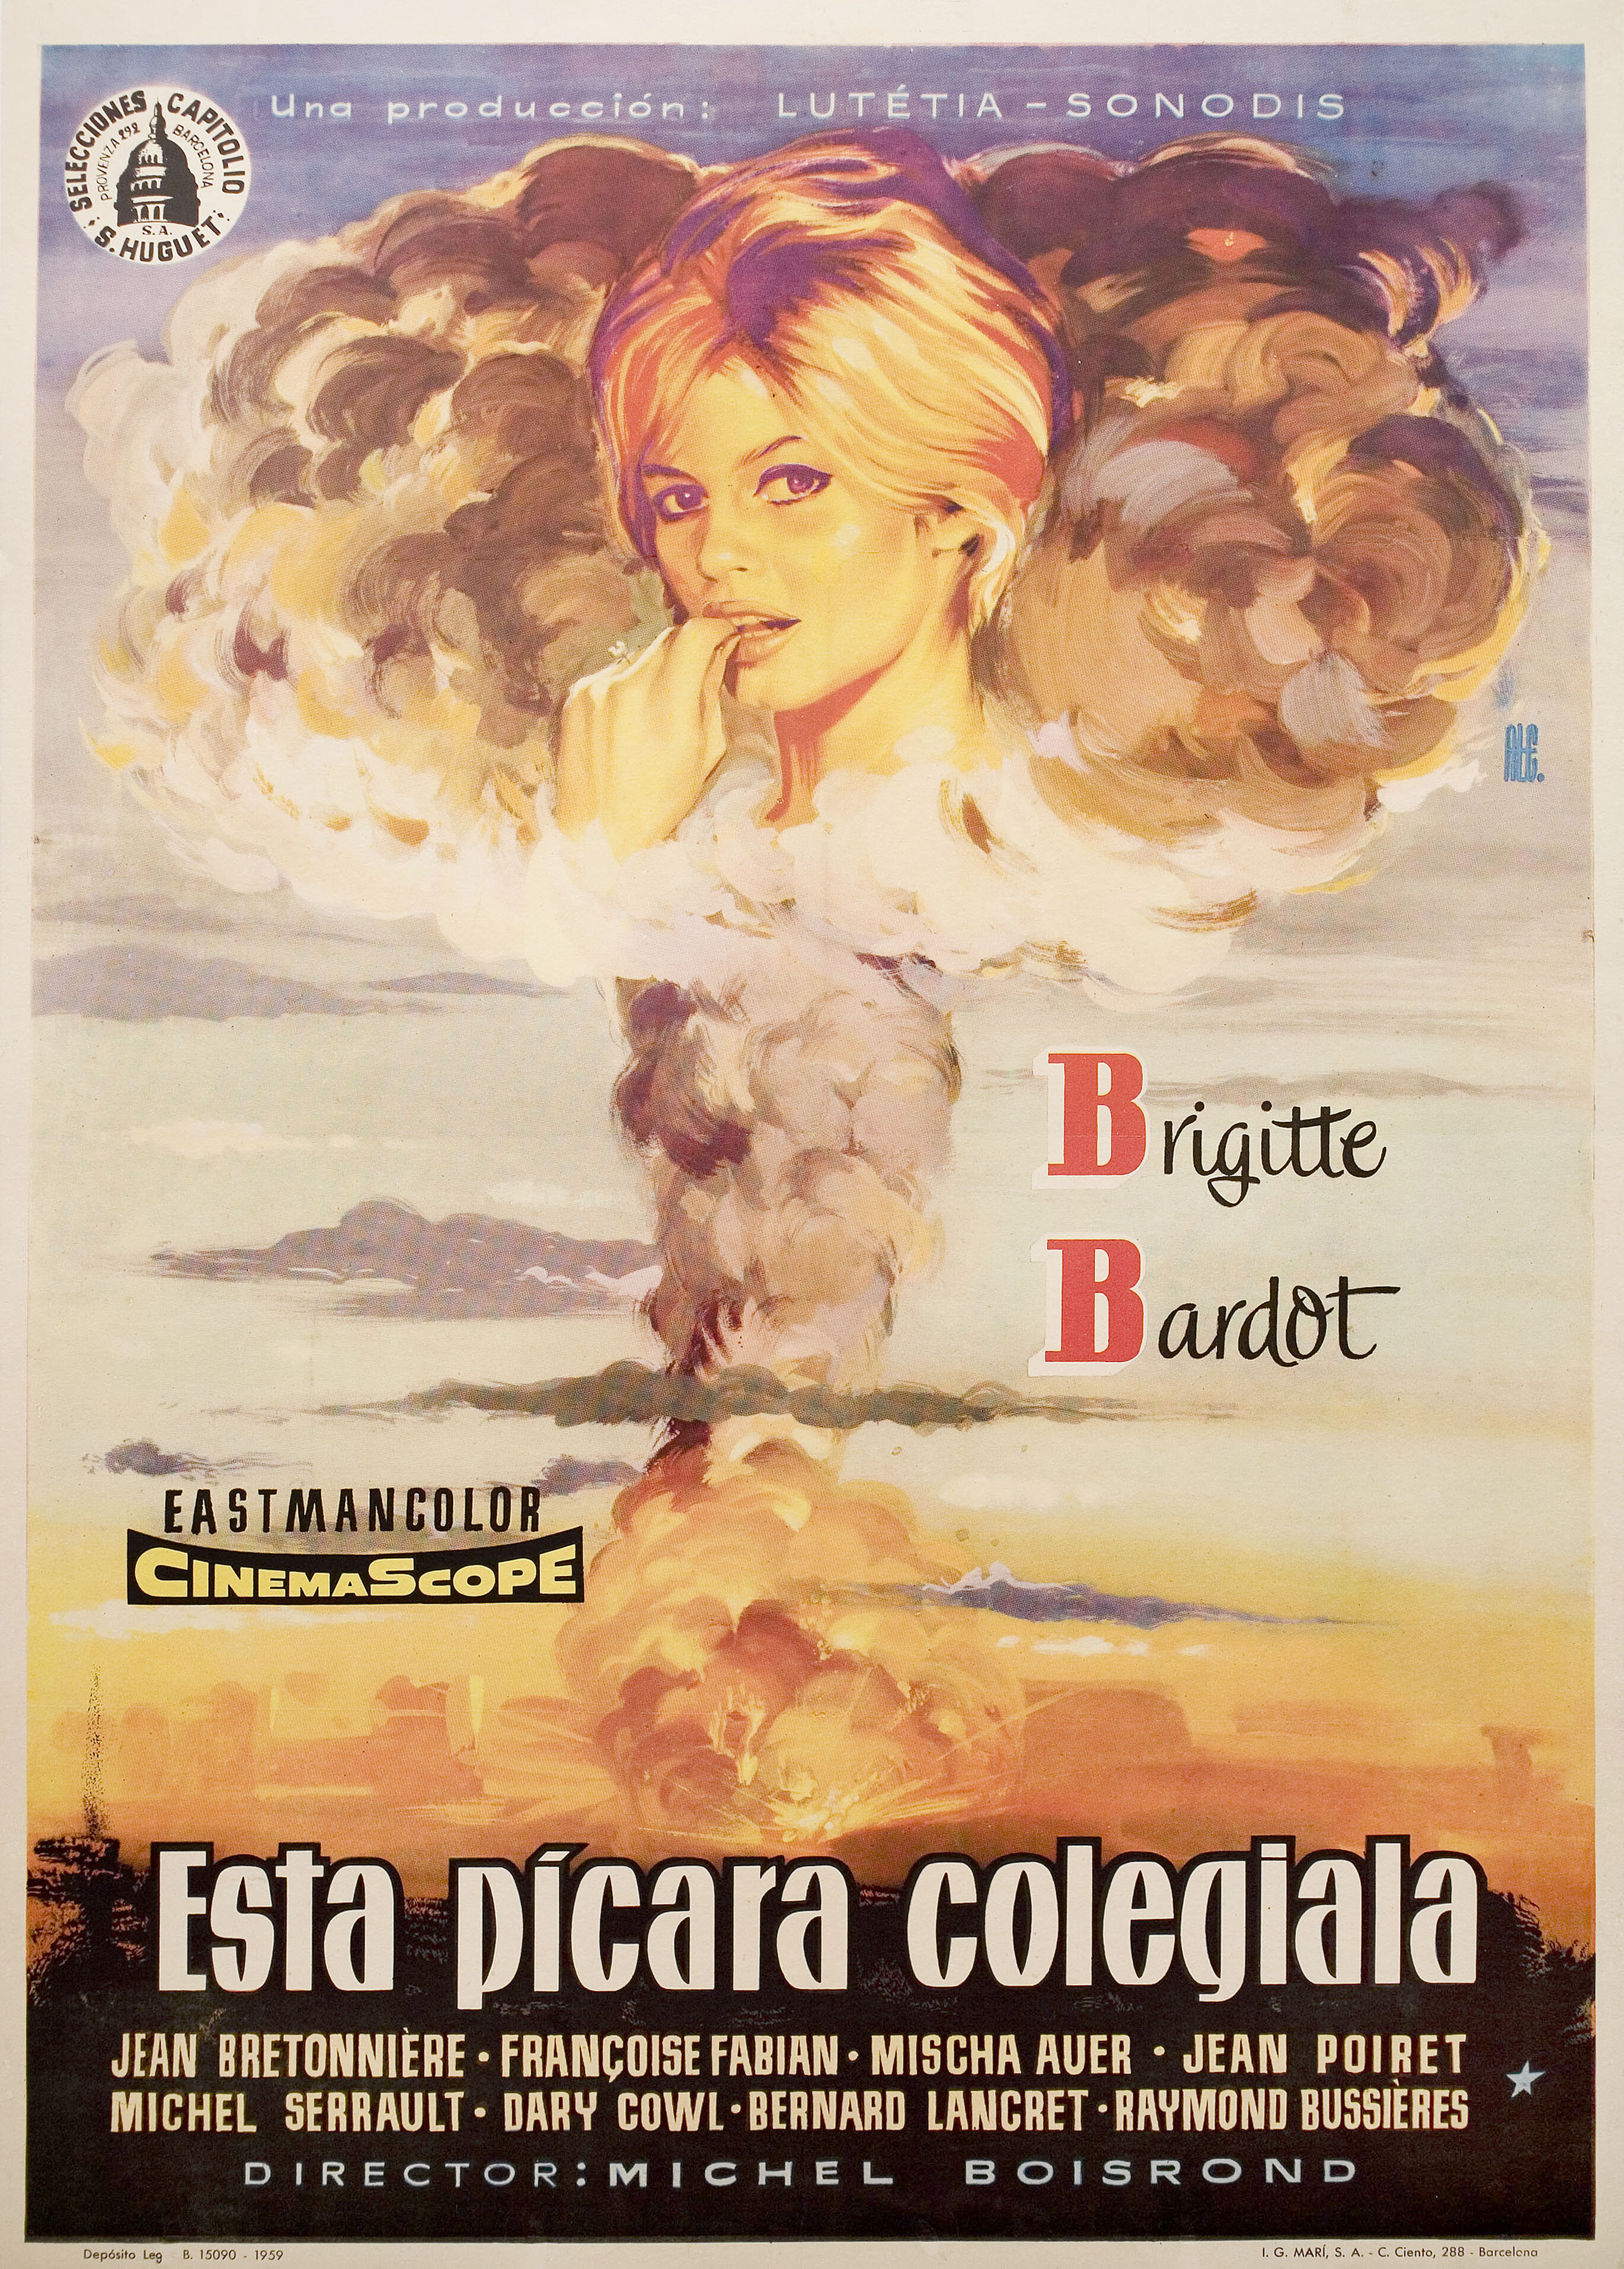 Строптивая девчонка (Cette sacree gamine, 1956), режиссёр Мишель Буарон, художественный постер к фильму (Испания, 1959 год)